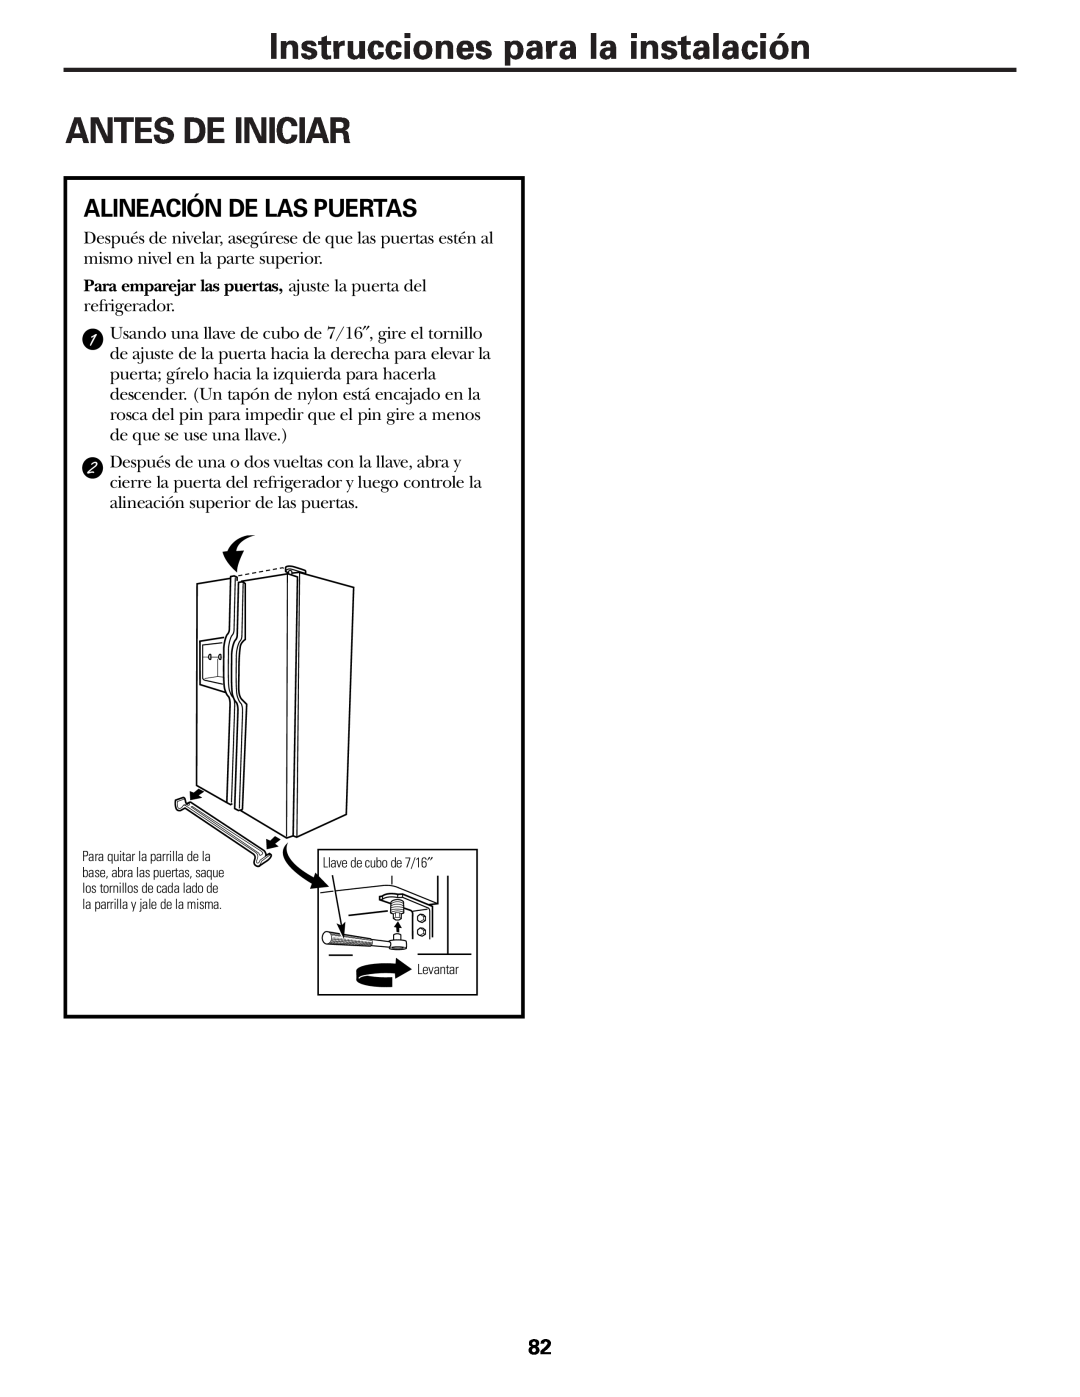 GE 25 installation instructions Instrucciones para la instalación ANTES DE INICIAR, Alineación De Las Puertas 